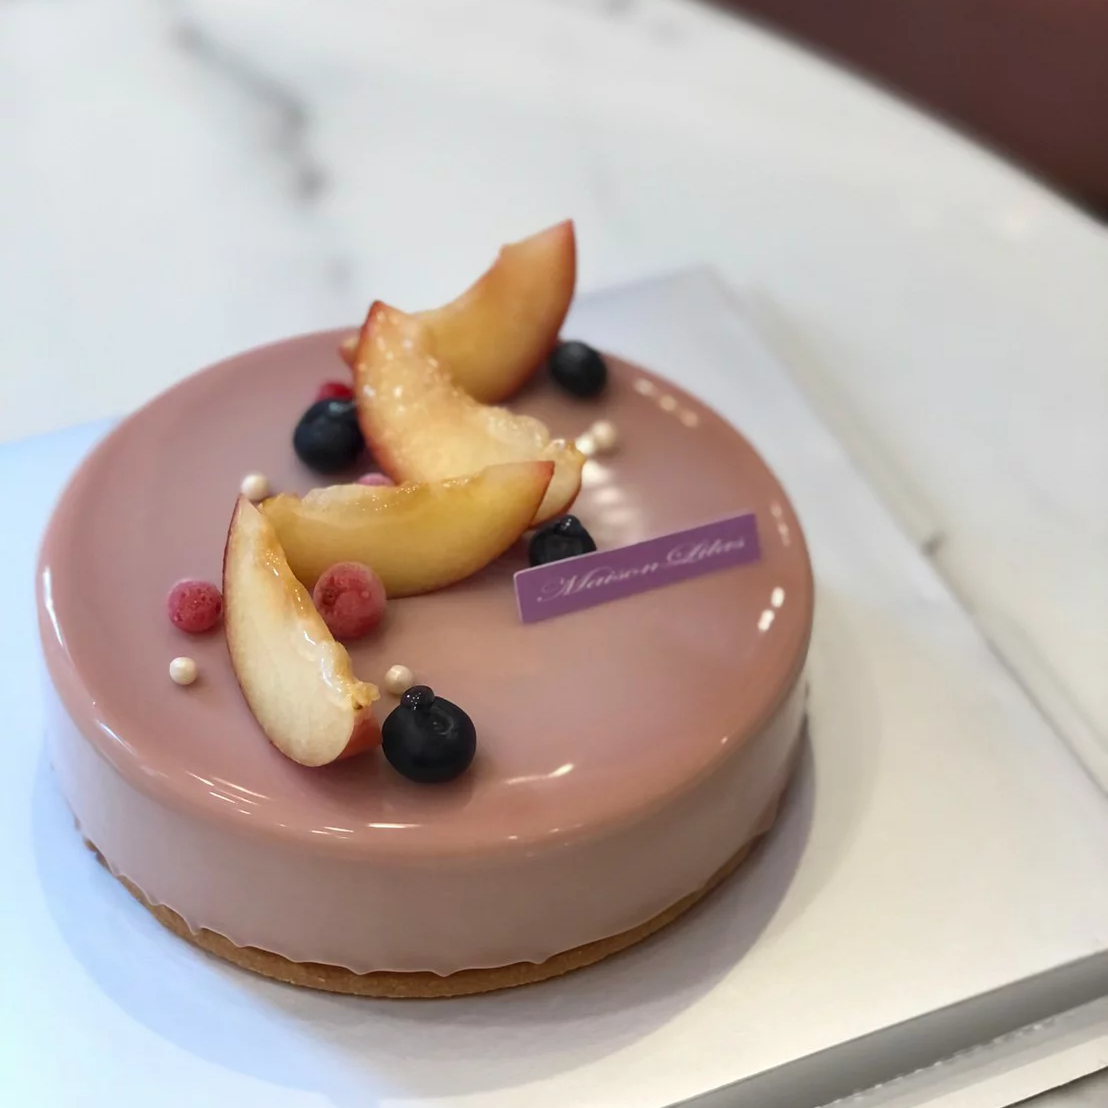 [MaisonLilas] 夏荔玫瑰RUBY巧克力慕斯蛋糕 (6吋)   (8吋)